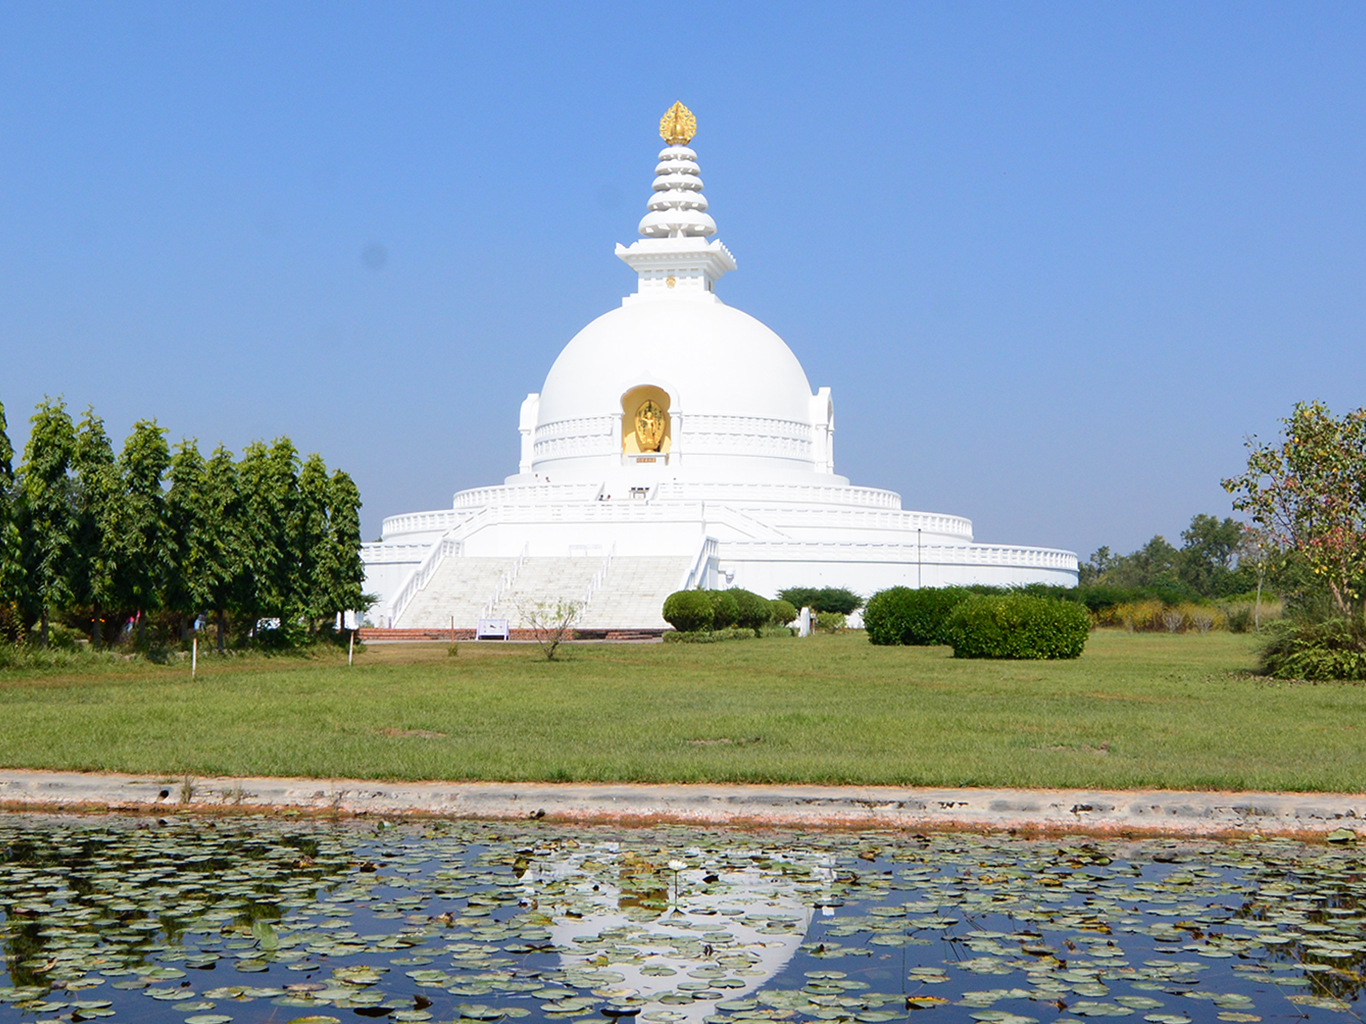 Stúpa světového míru nacházející se v buddhistickém areálu v Lumbini